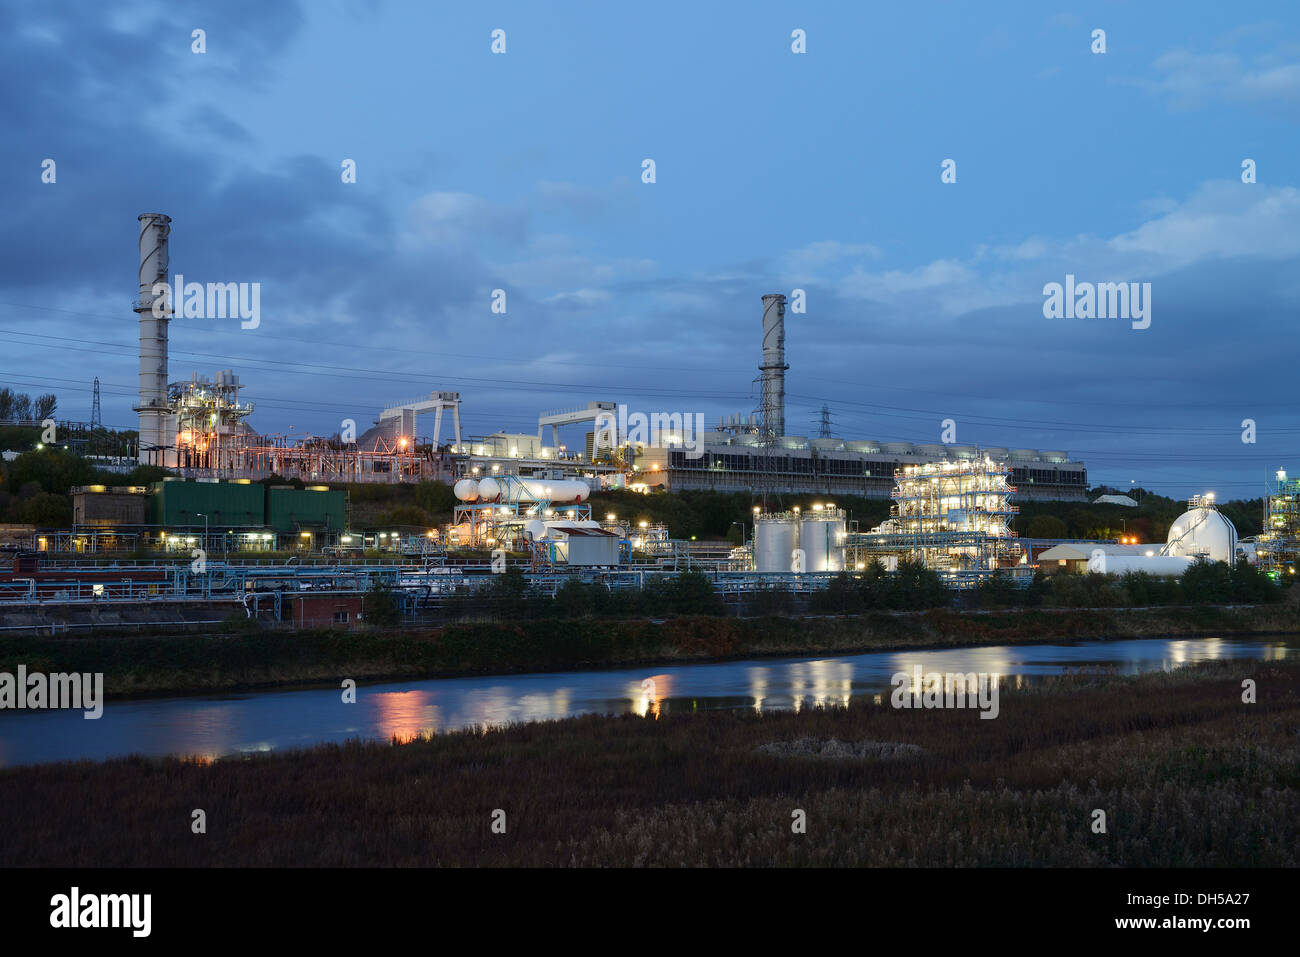 Power Station à côté de l'Ineos Chlor produit chimique industriel travaille sur la Mersey Estuary à Runcorn Cheshire UK Banque D'Images